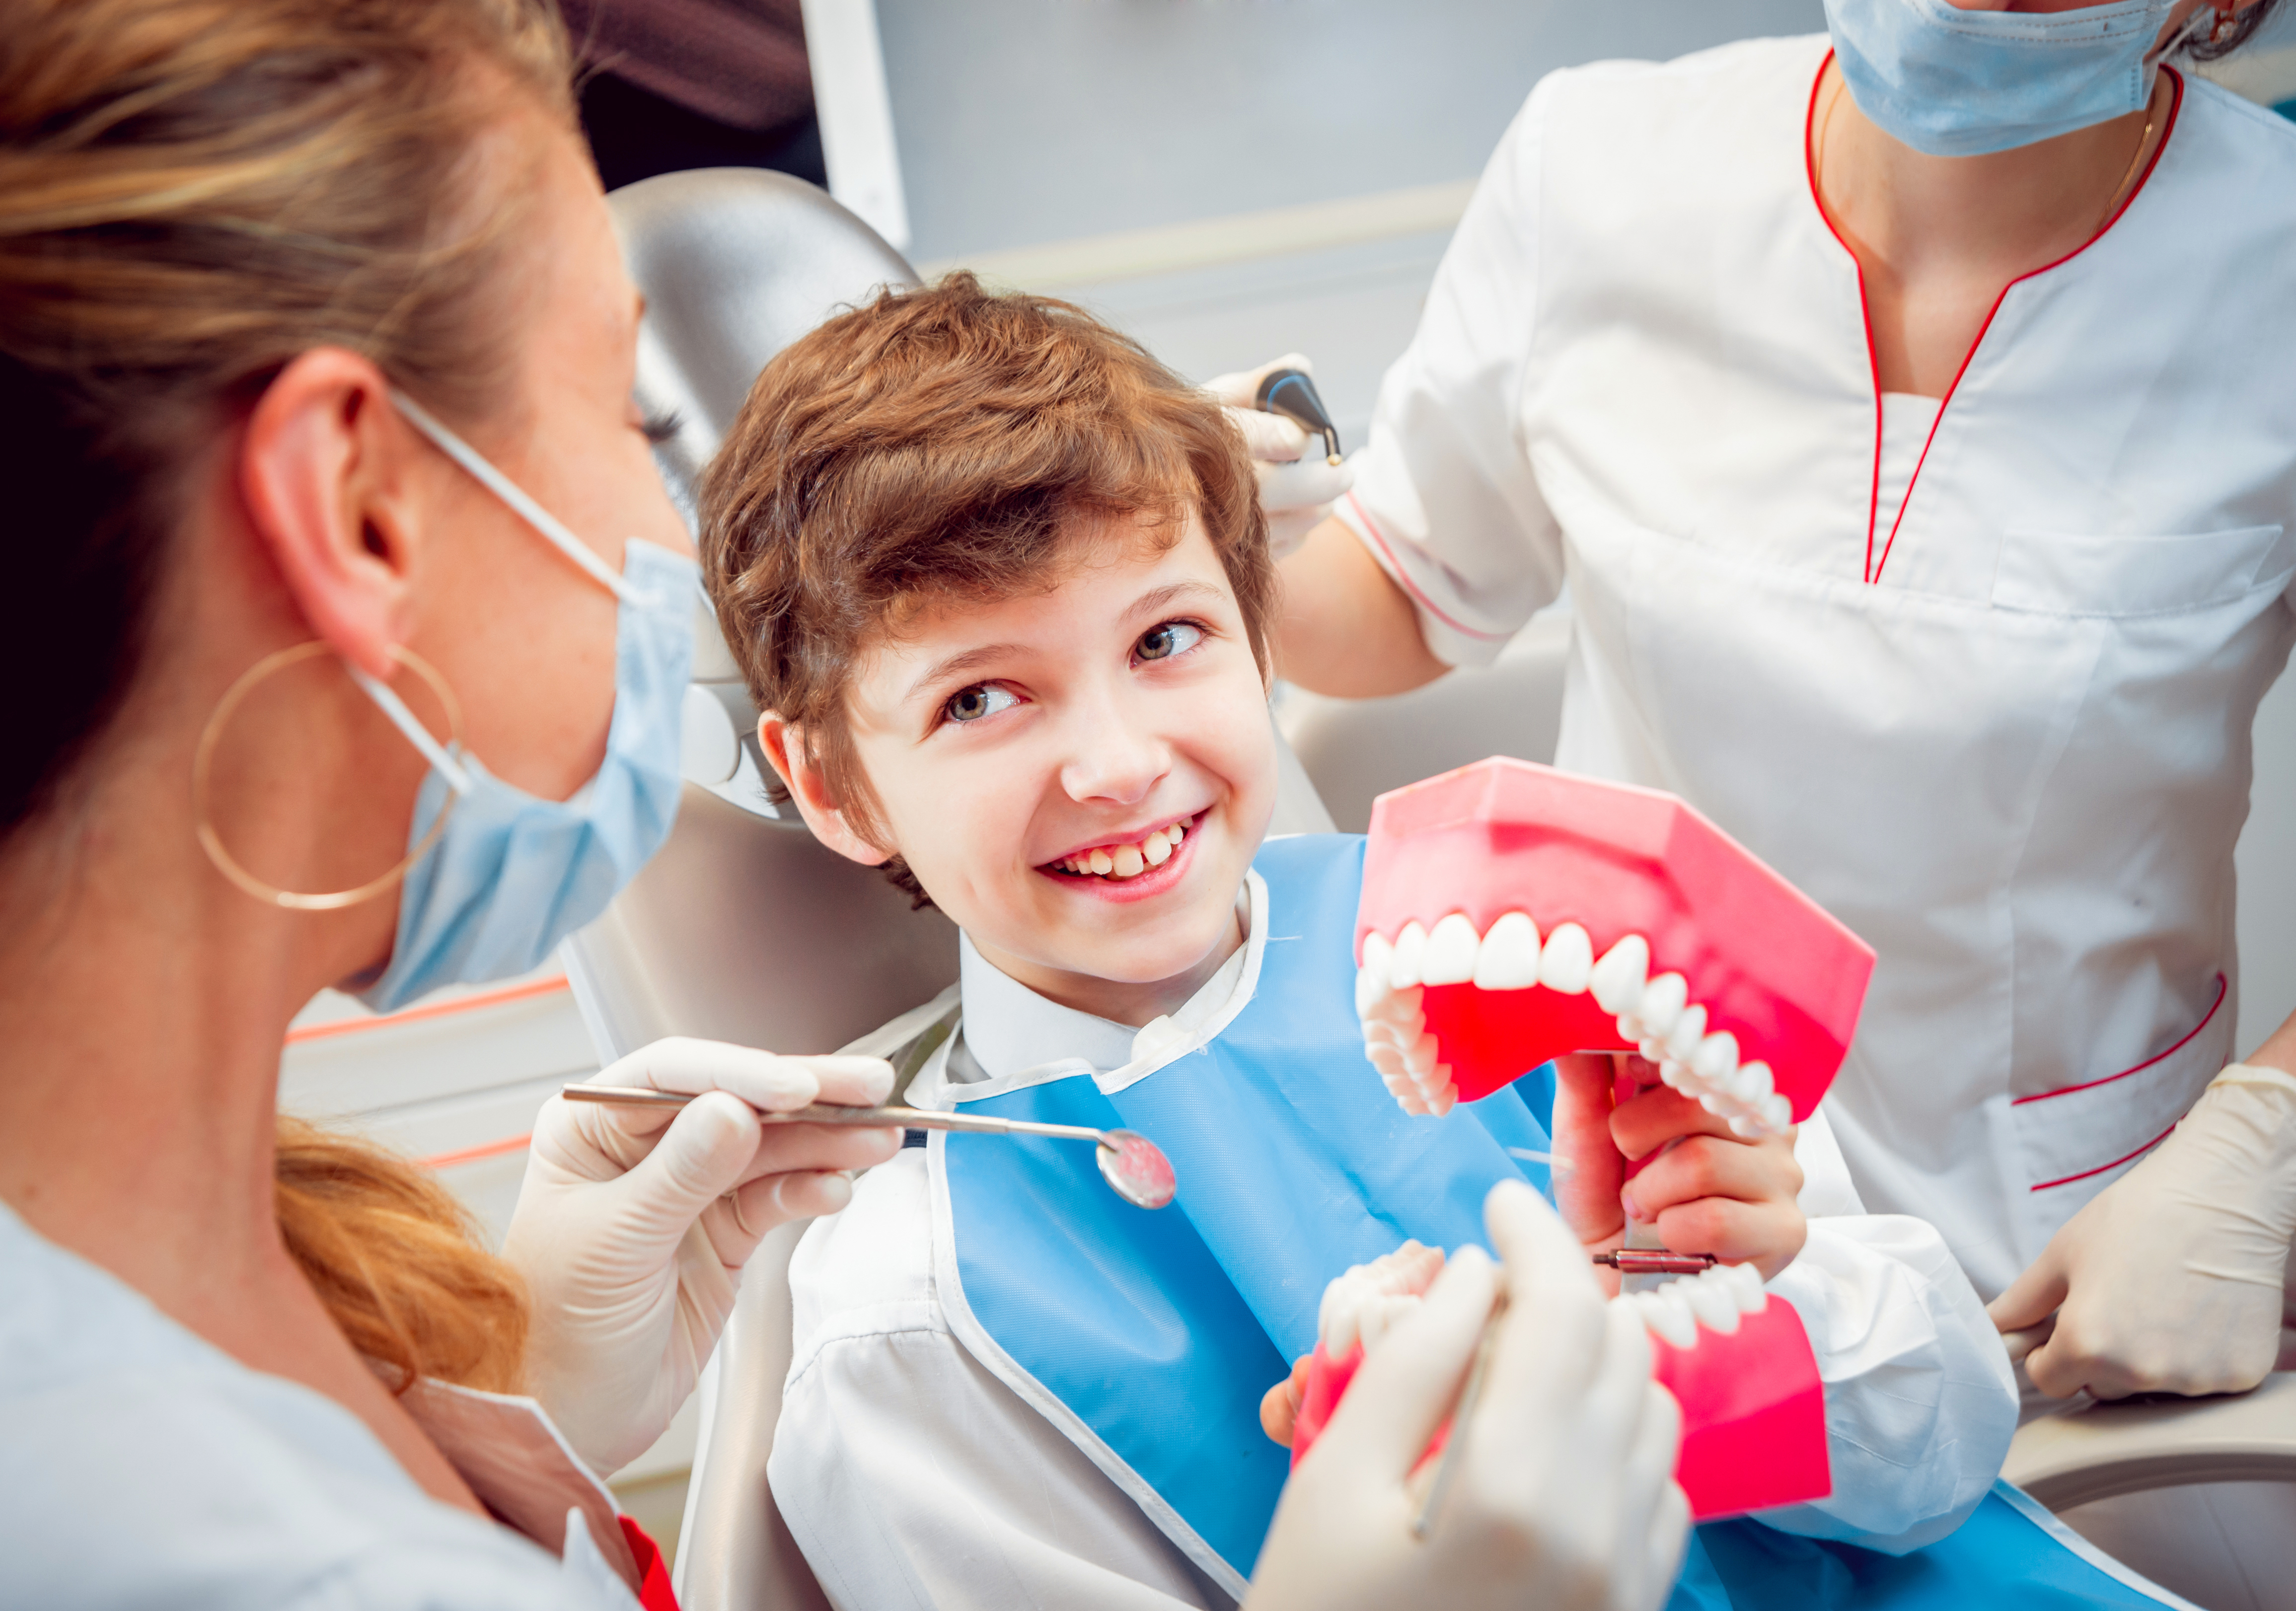 Осмотр полости рта детей. Детская стоматология. Стоматология дети. Ребенок у стоматолога. Зубы стоматология.